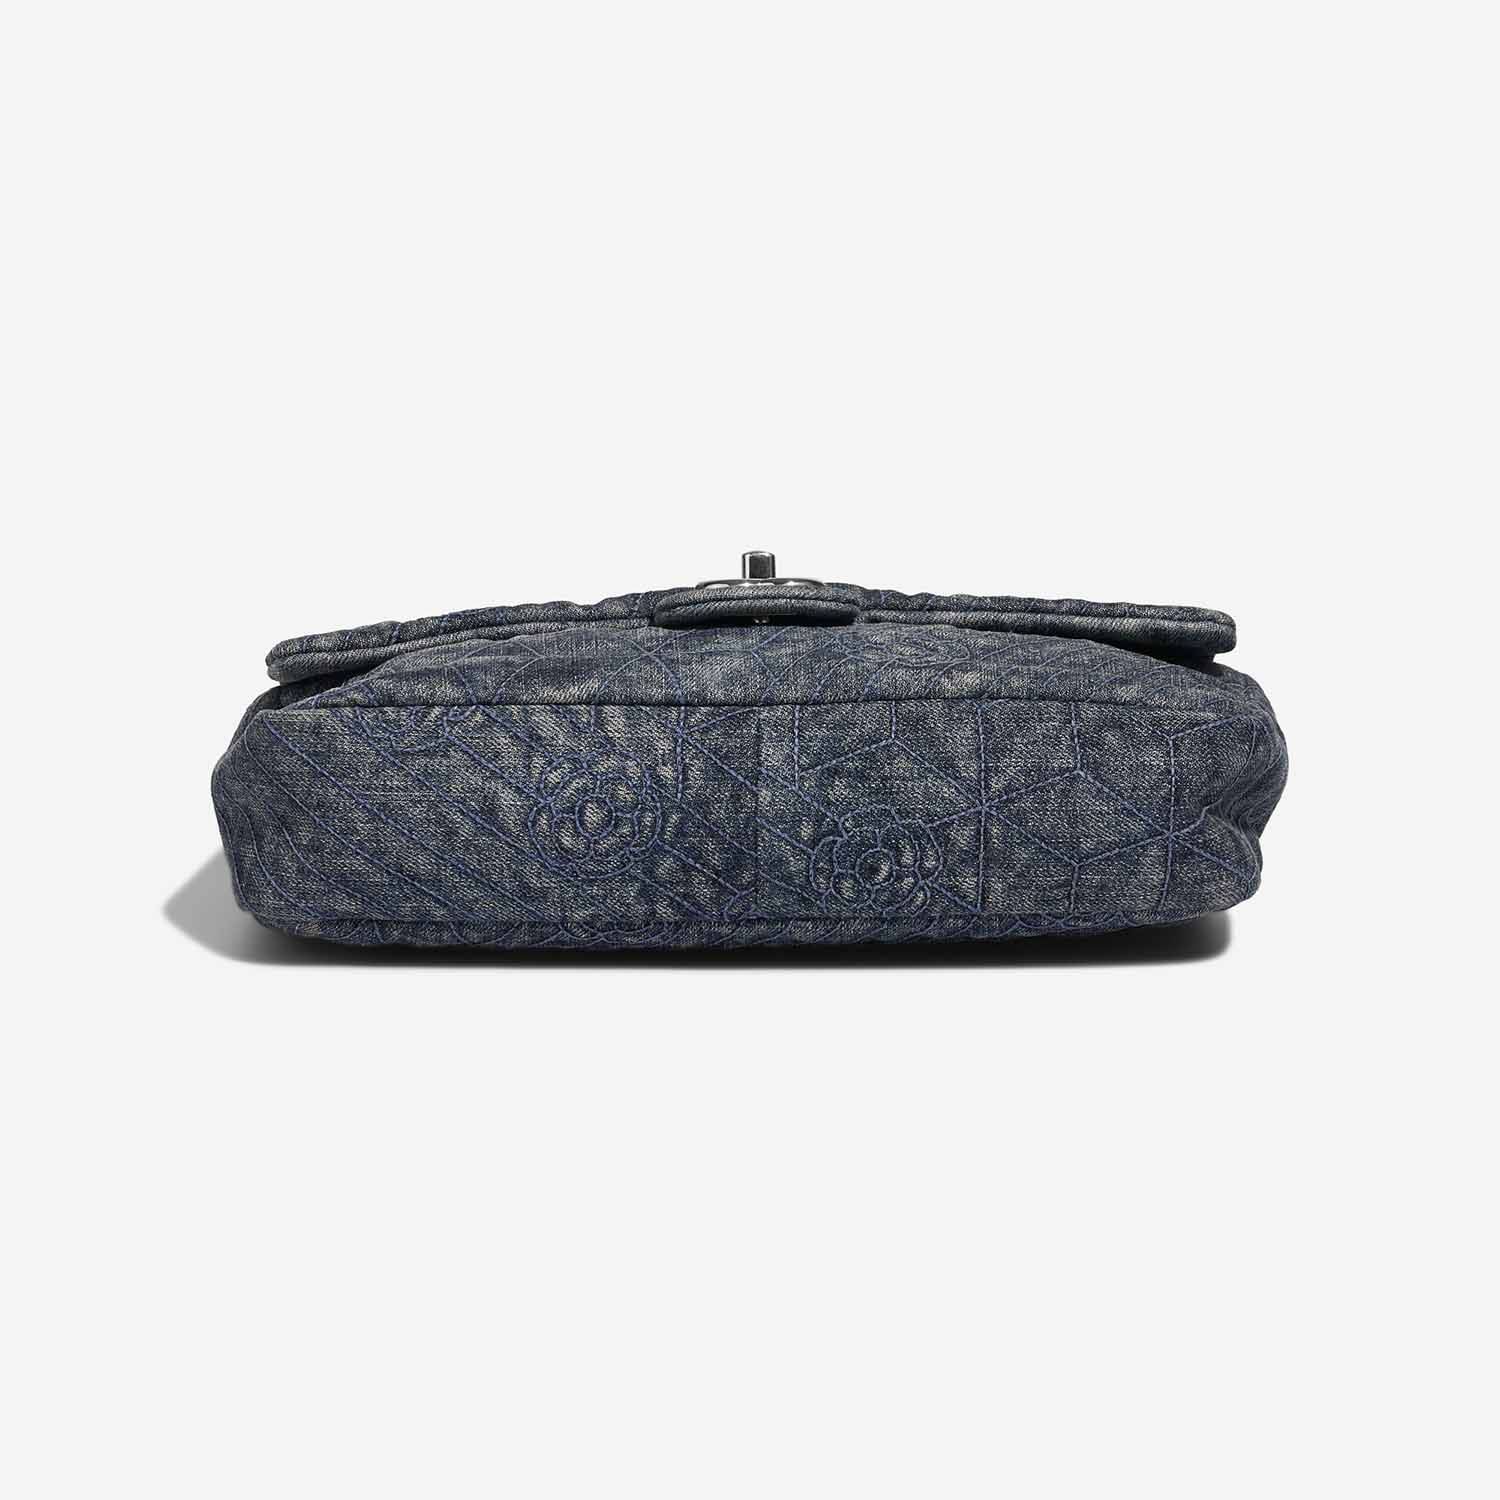 Chanel Timeless Medium Blue Bottom | Verkaufen Sie Ihre Designer-Tasche auf Saclab.com